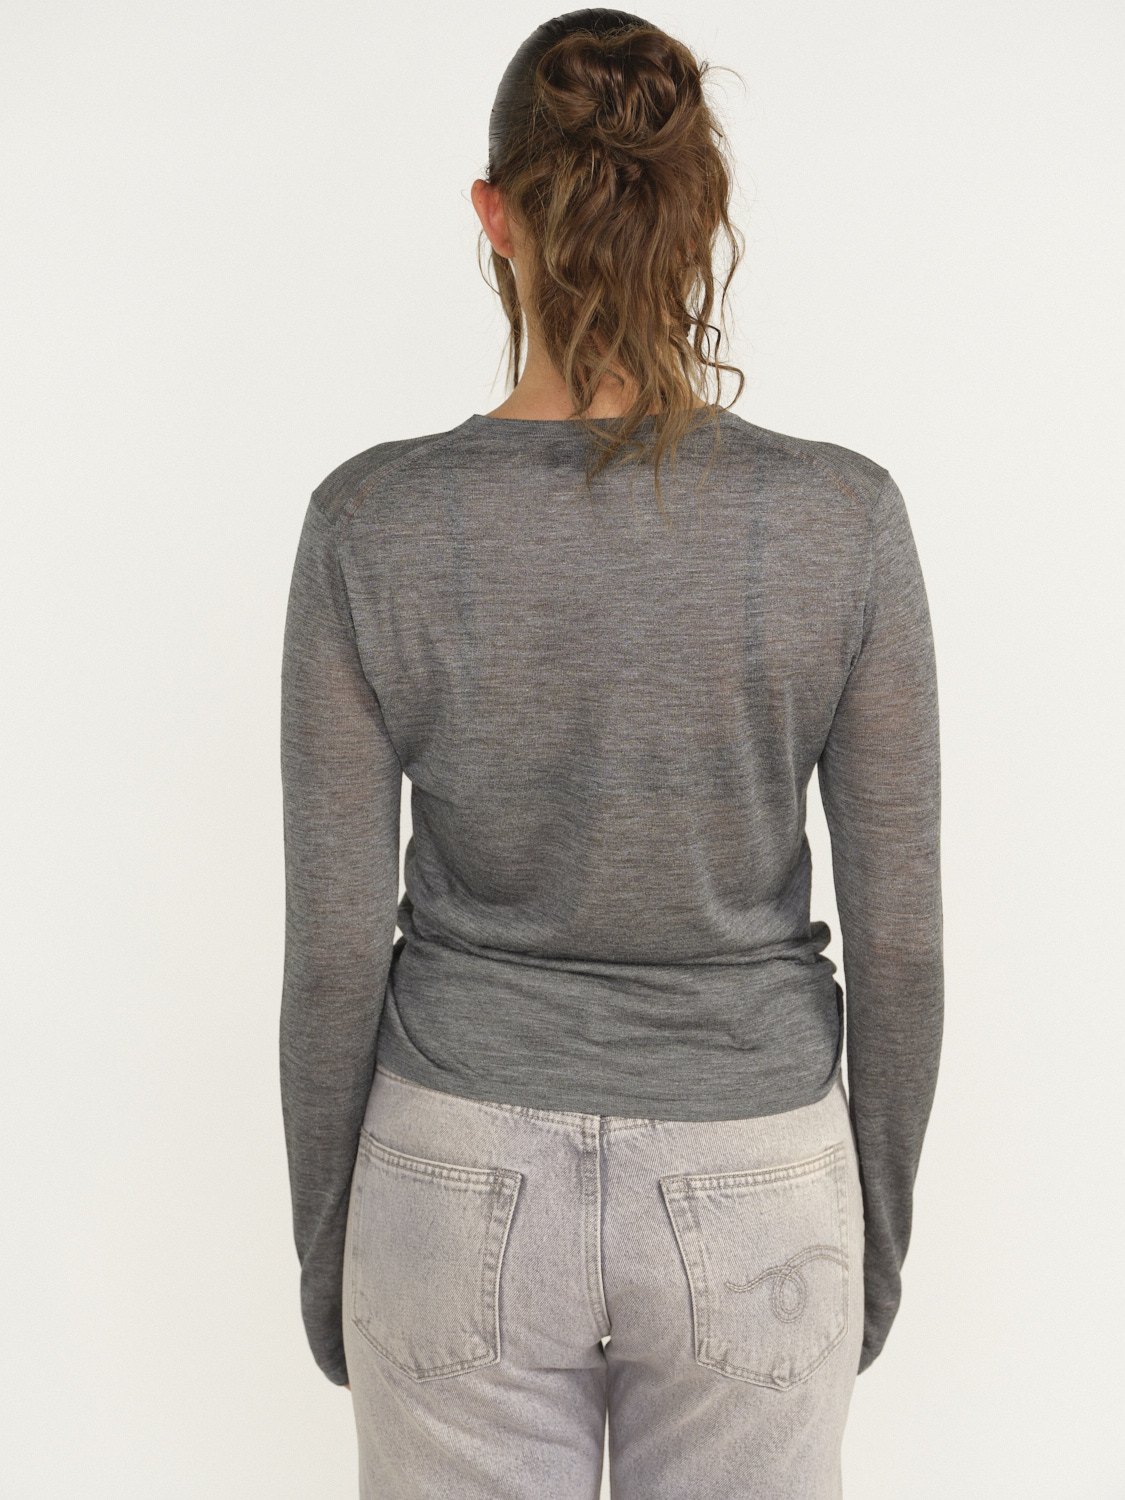 Nili Lotan Candice Sweater - T-shirt manches longues en soie gris S